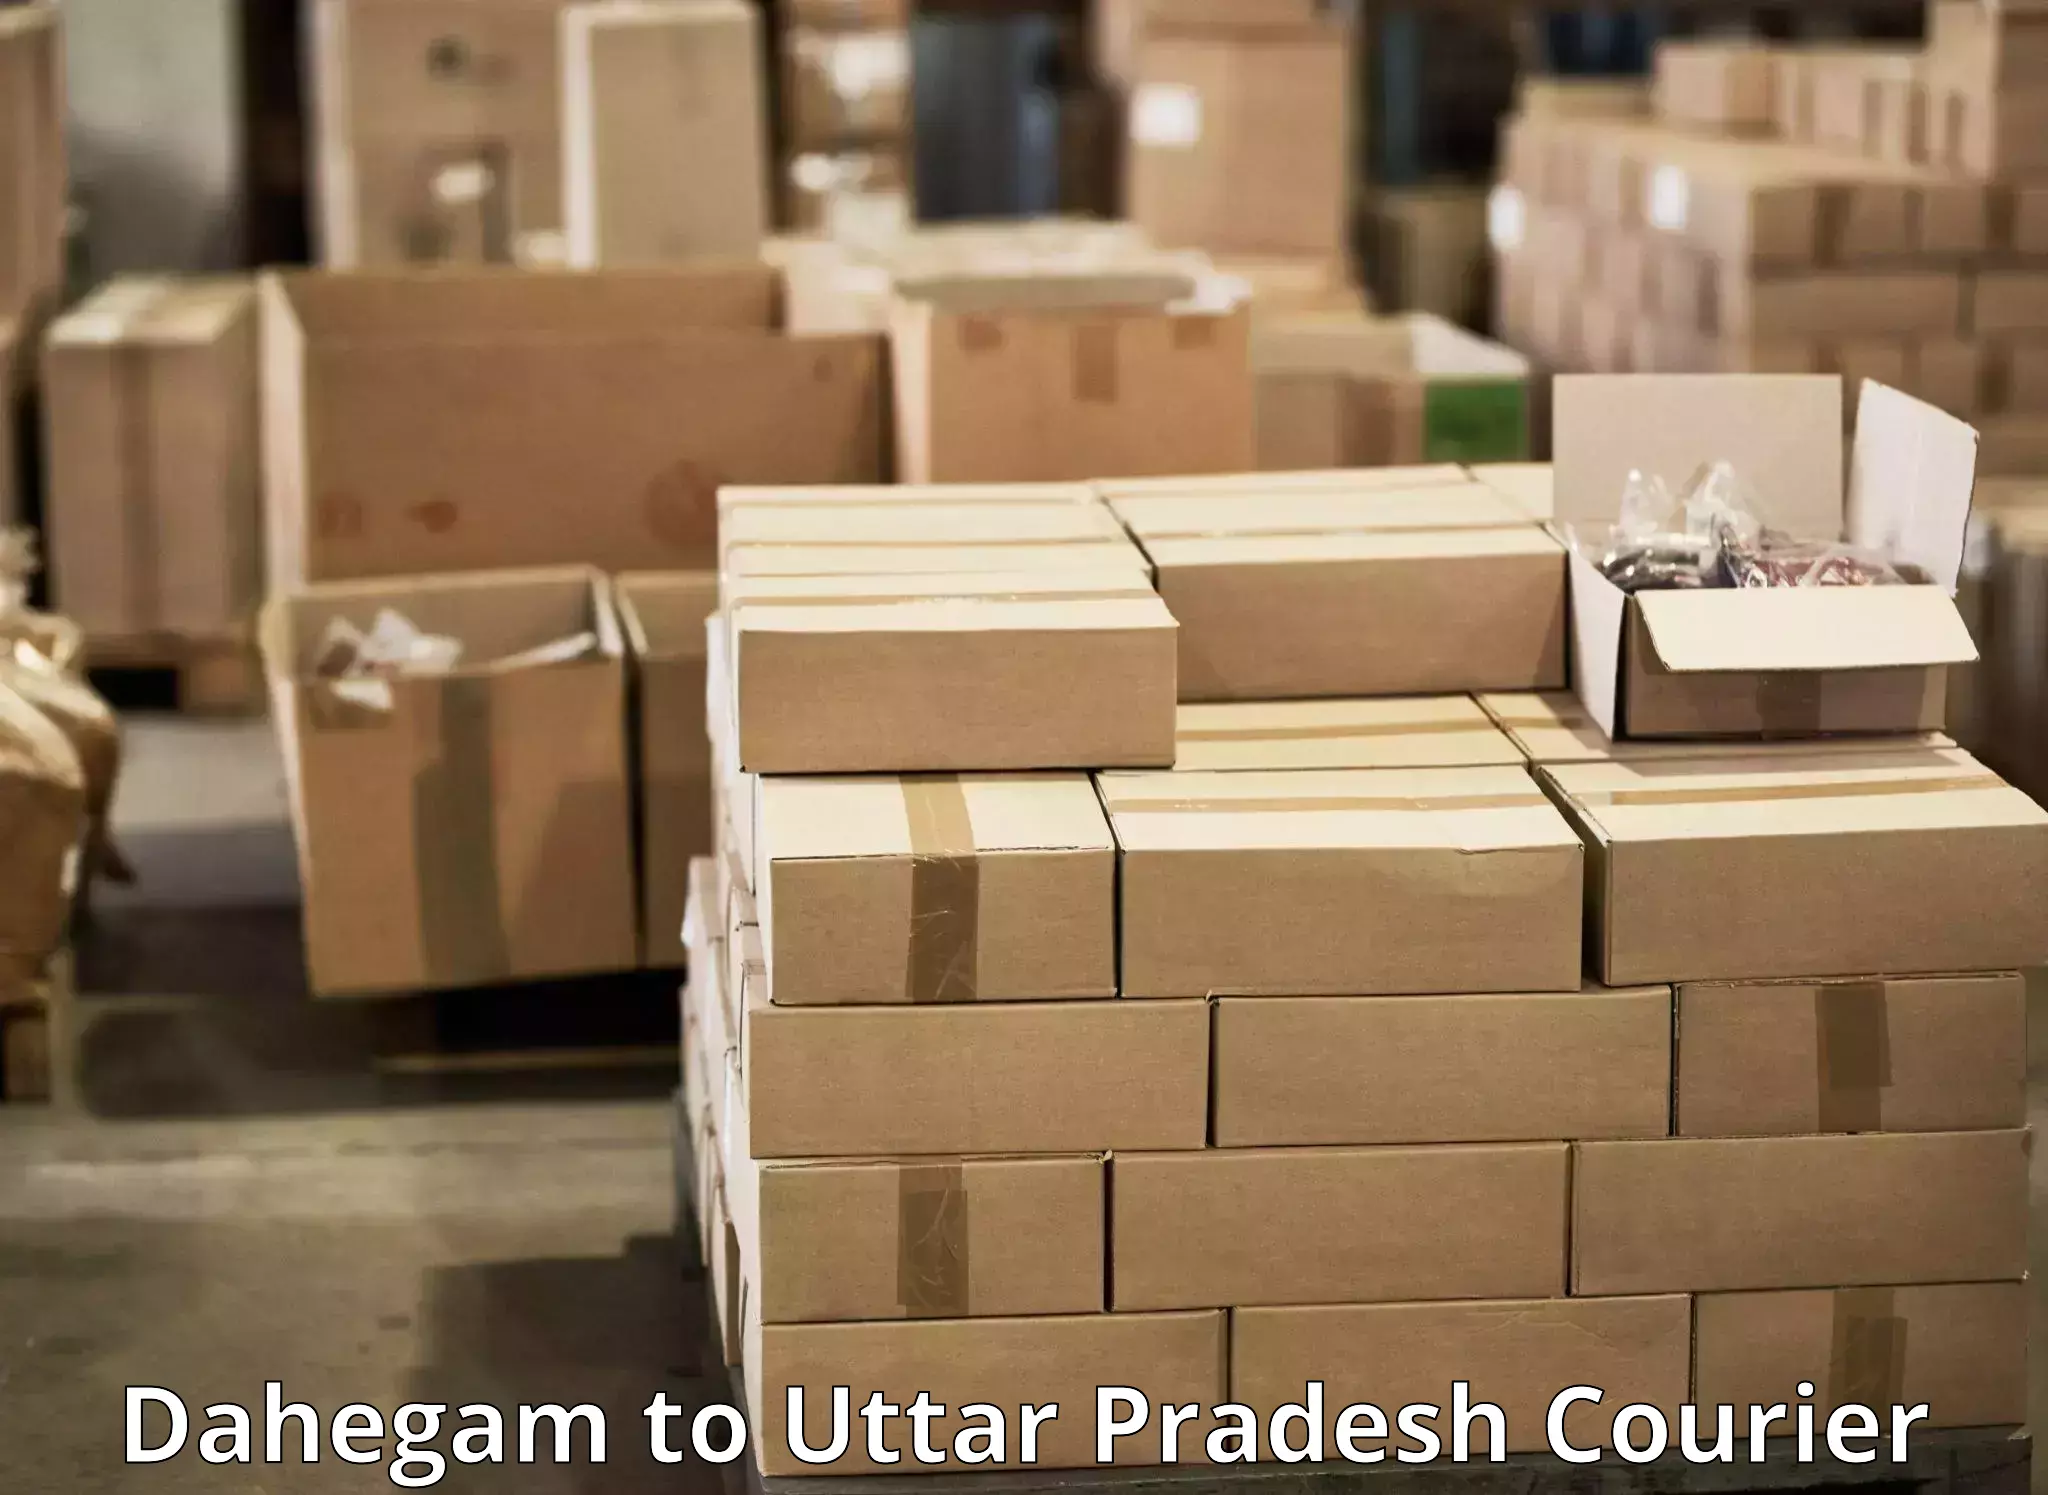 Courier service comparison Dahegam to IIT Kanpur